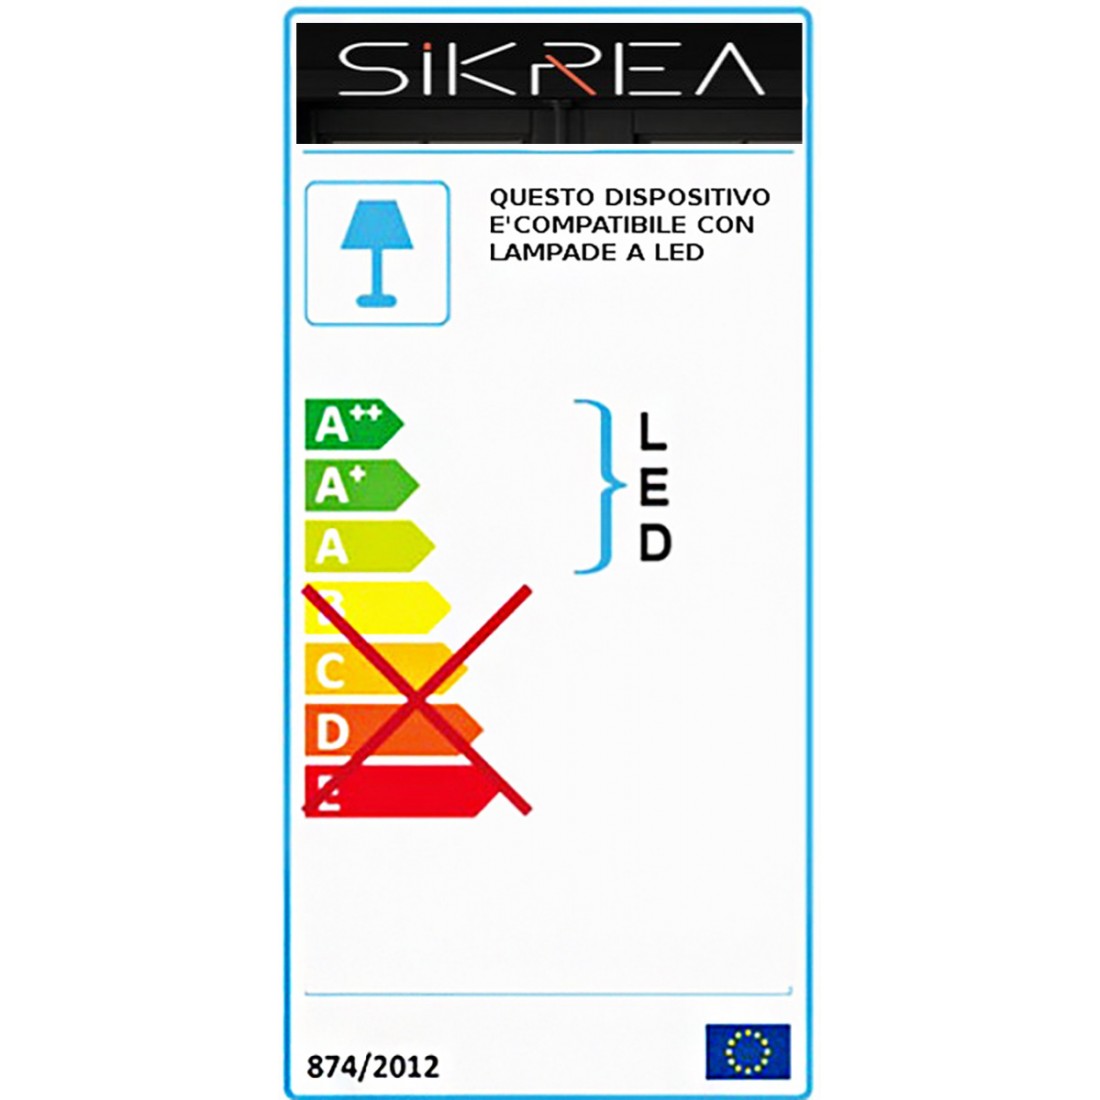 Lampadaire classique Sikrea ANNA P 7463 E27 LED